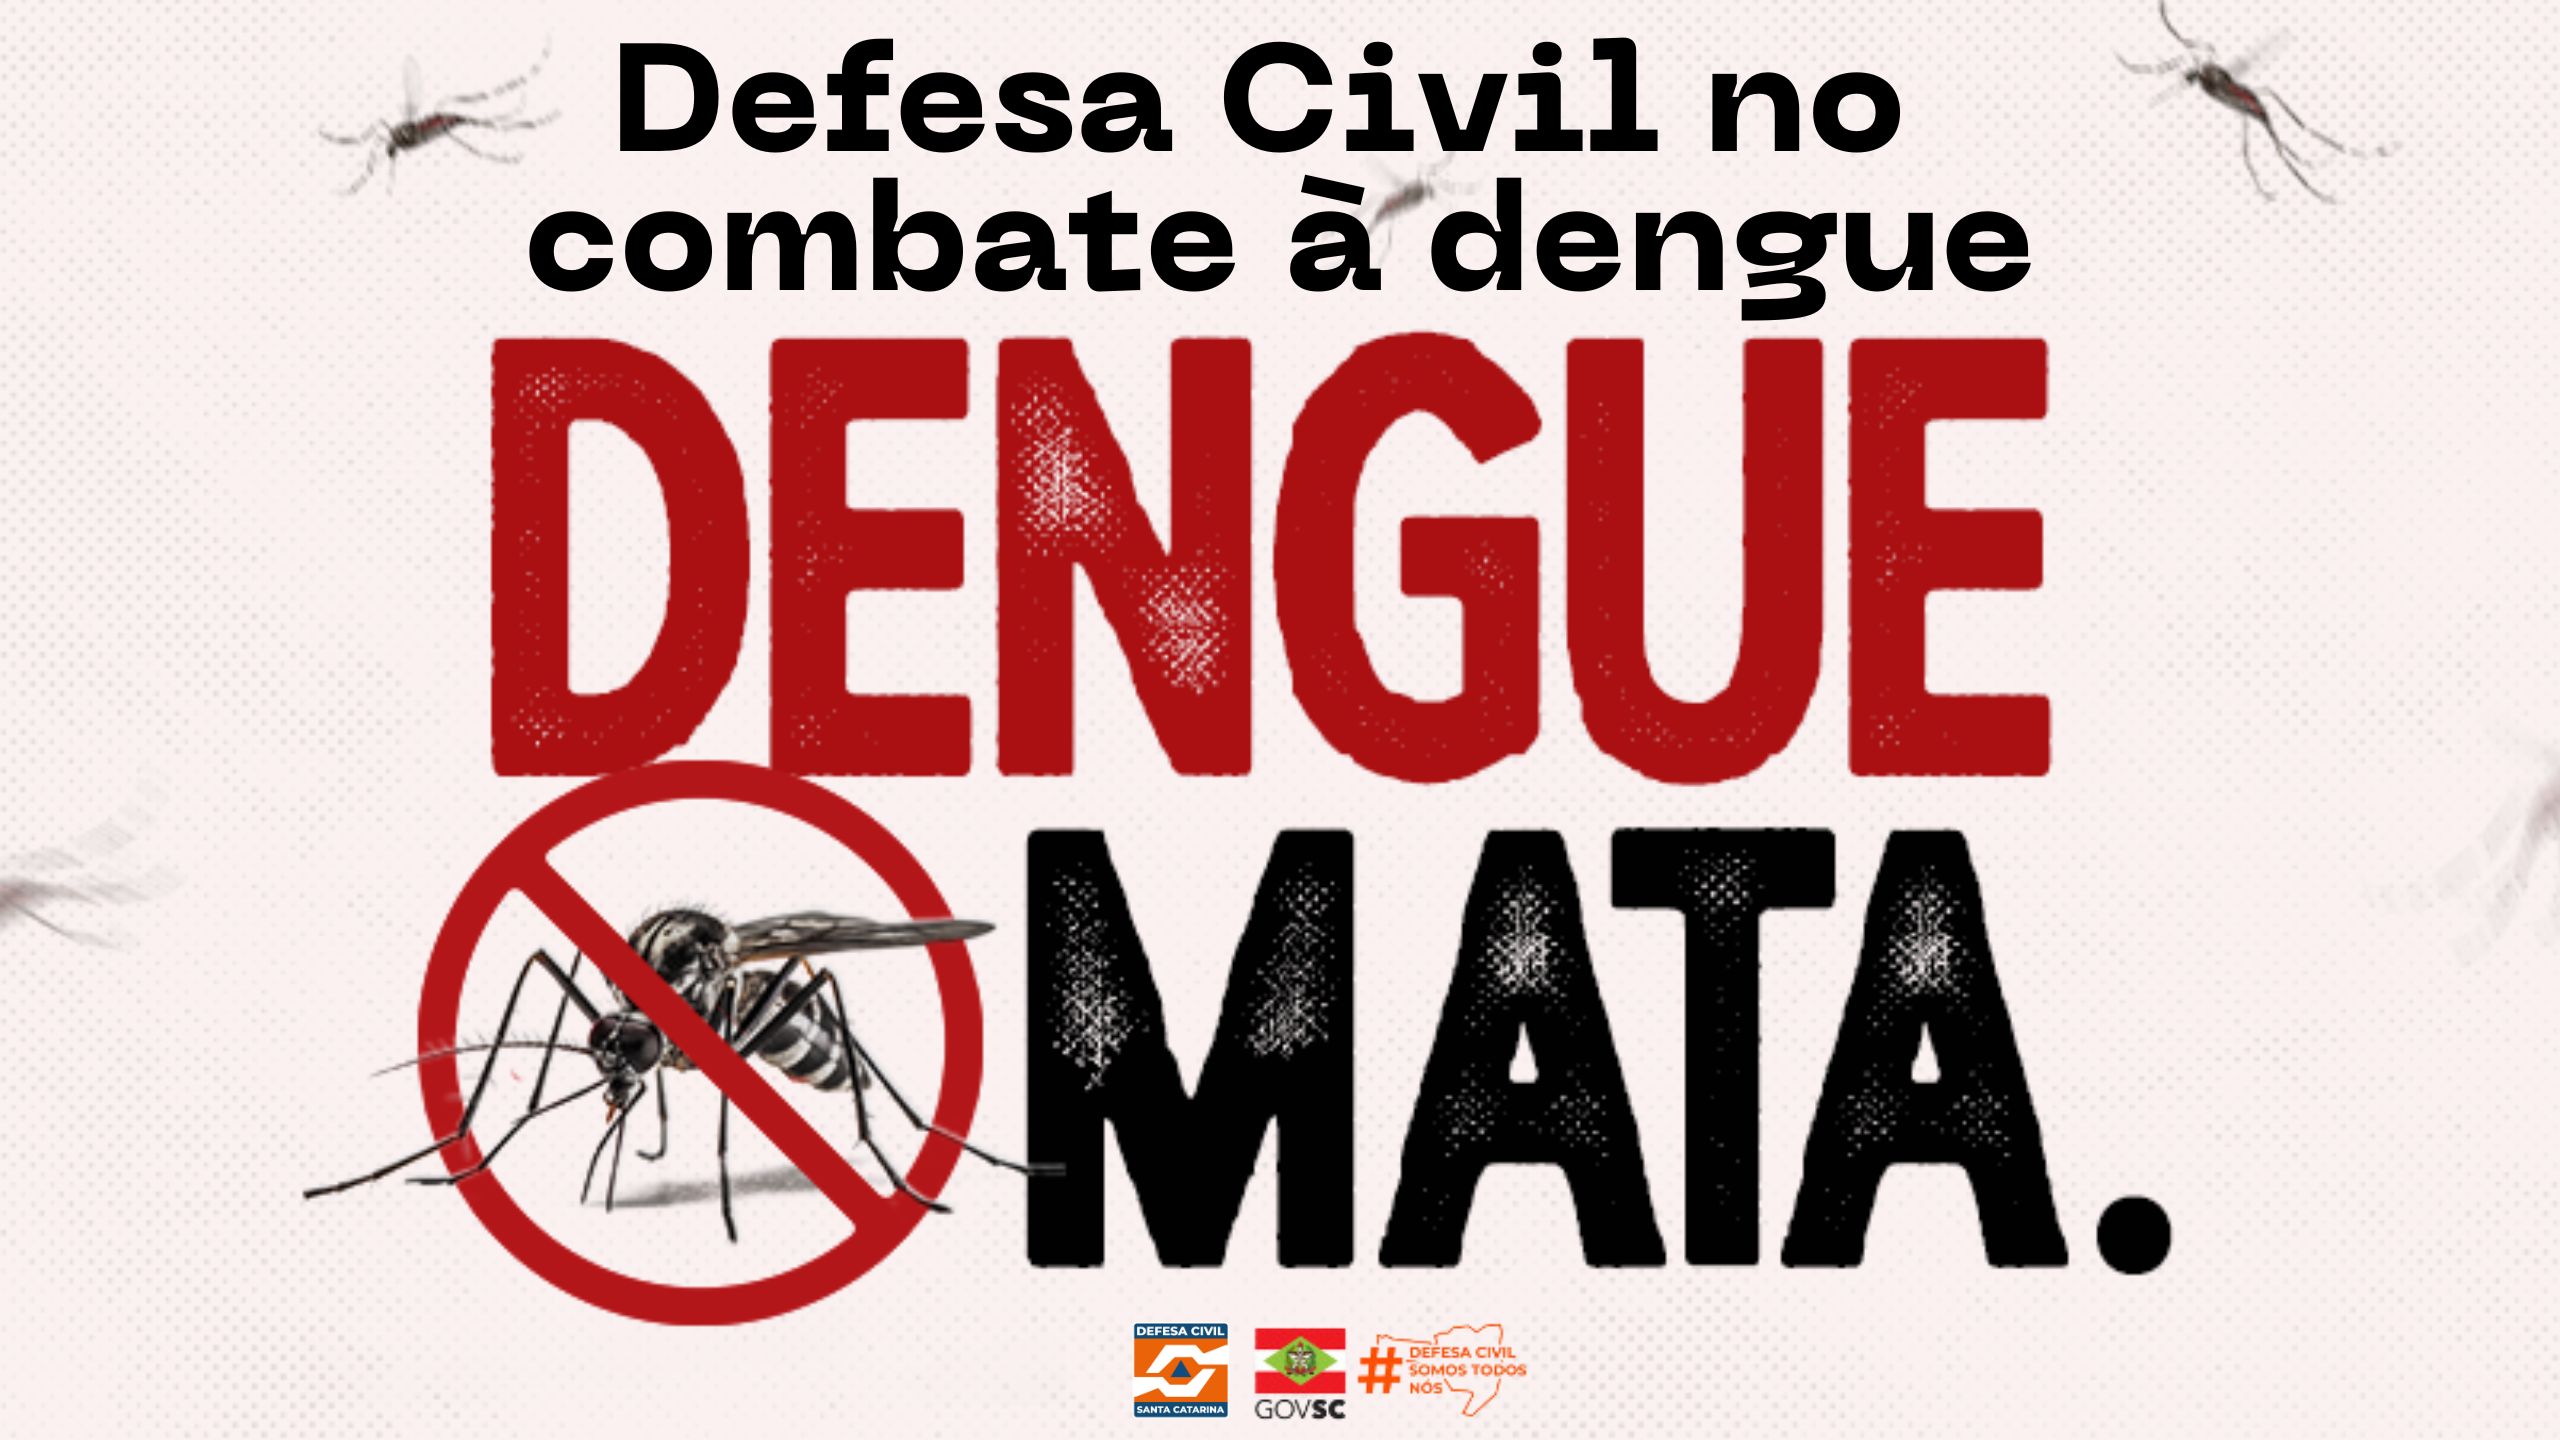 Defesa Civil envia Alertas por SMS para conscientizar a população no combate à dengue